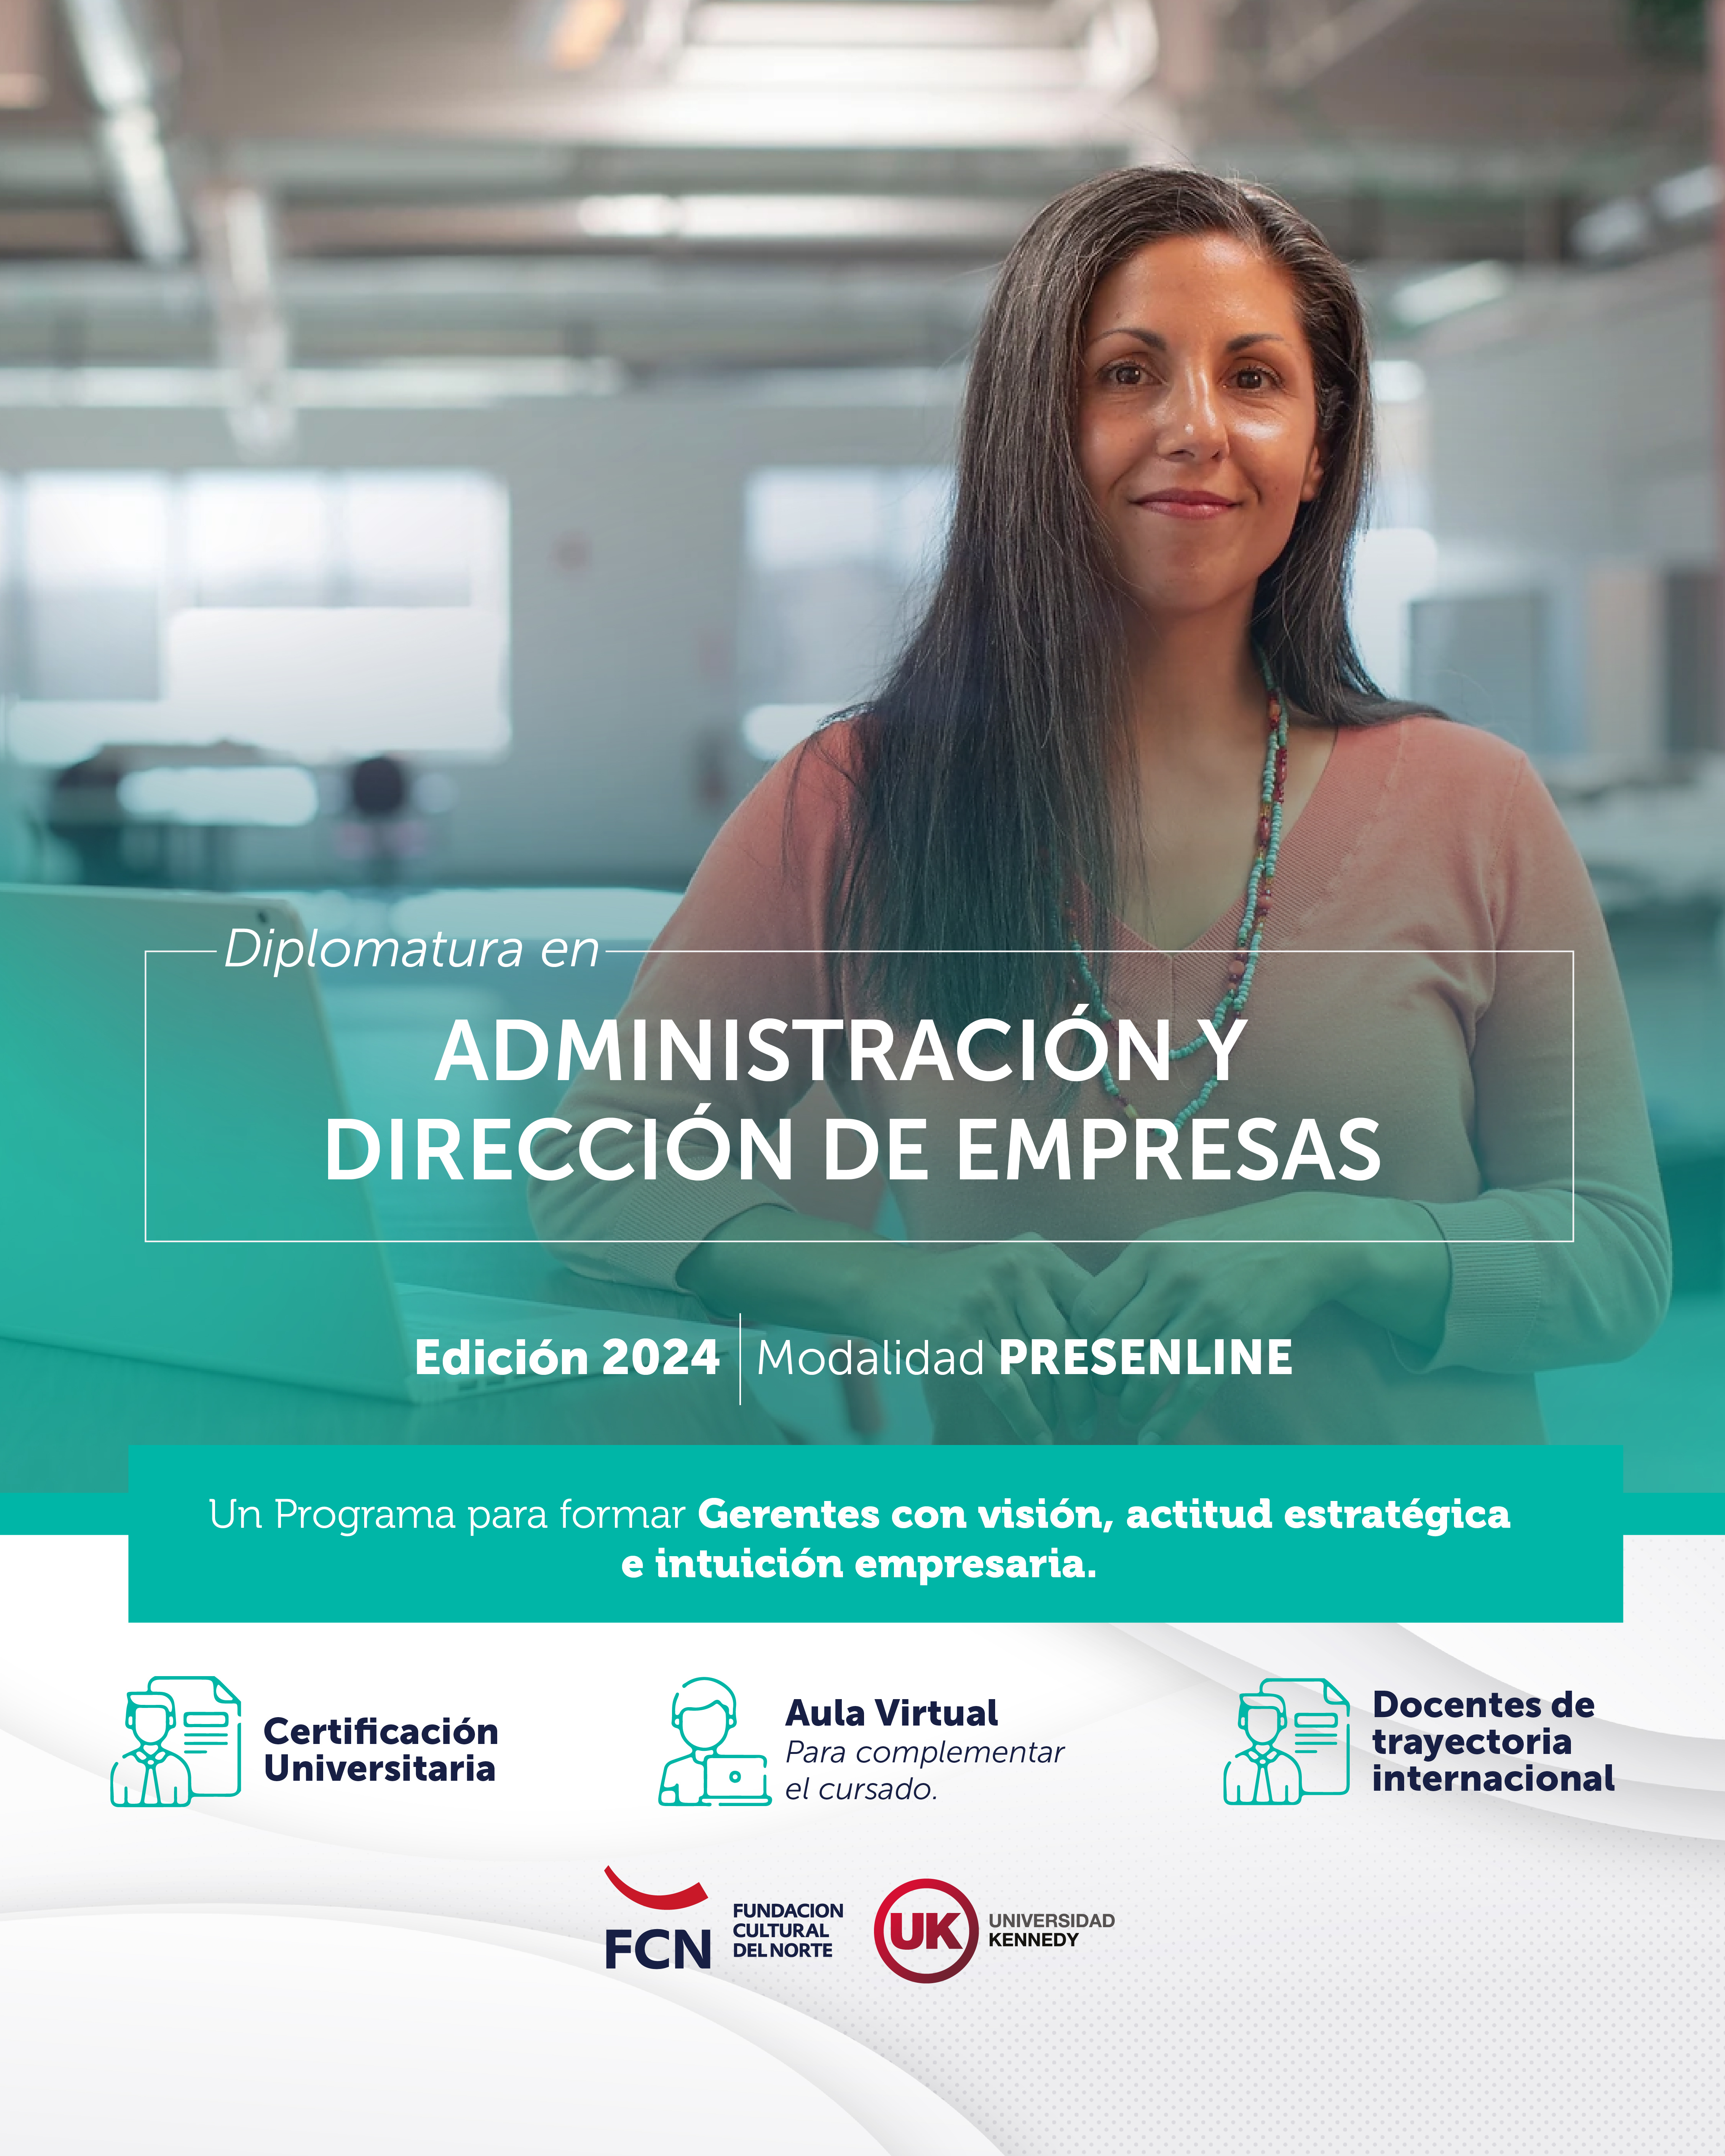 Diplomatura en Administración y Dirección de Empresas- Edición 2024